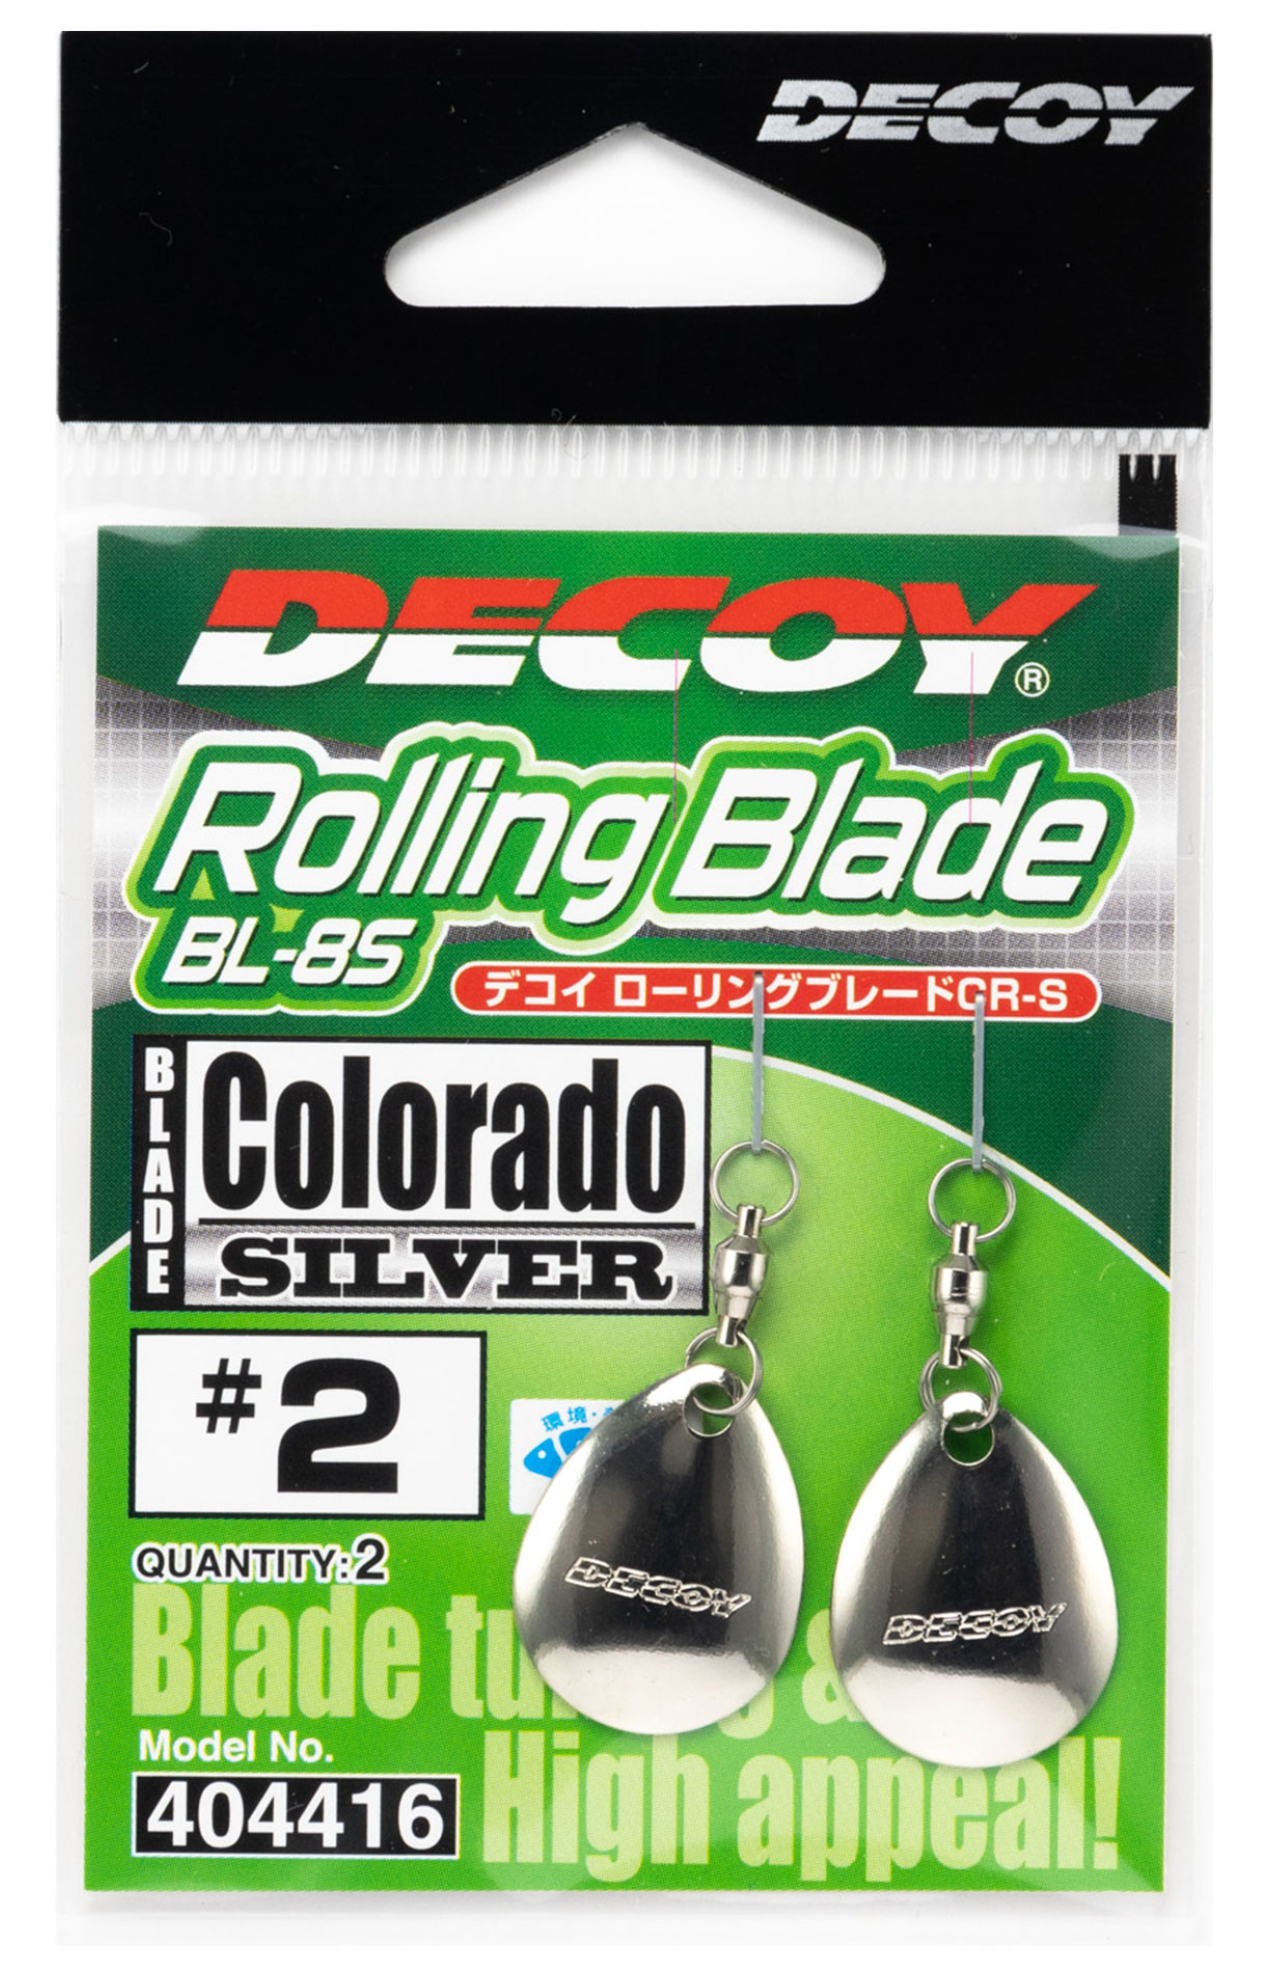 Decoy BL-8S Rolling Blade Colorado